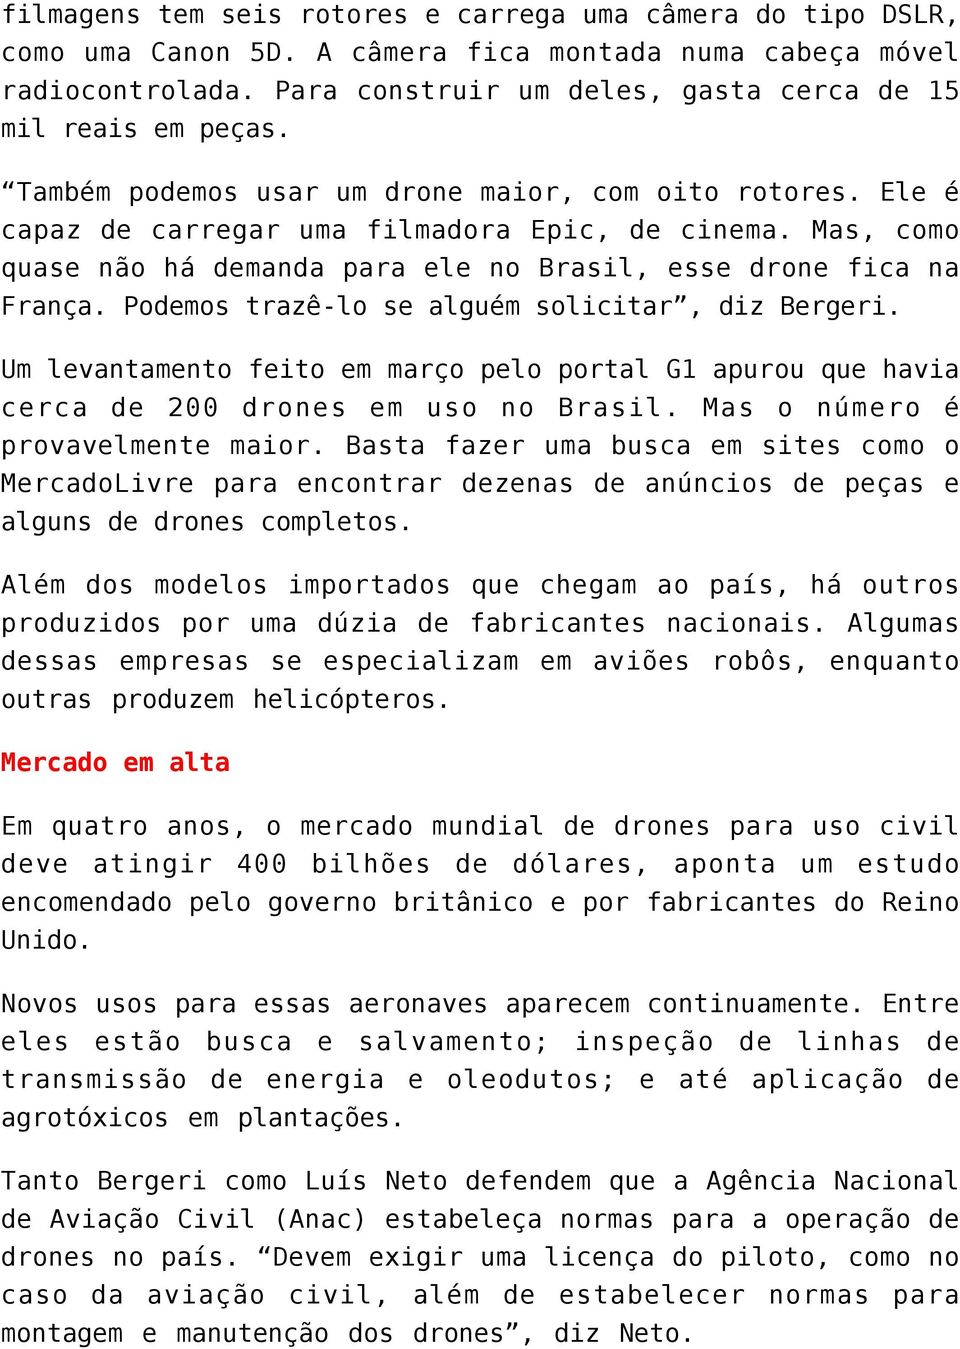 Podemos trazê-lo se alguém solicitar, diz Bergeri. Um levantamento feito em março pelo portal G1 apurou que havia cerca de 200 drones em uso no Brasil. Mas o número é provavelmente maior.